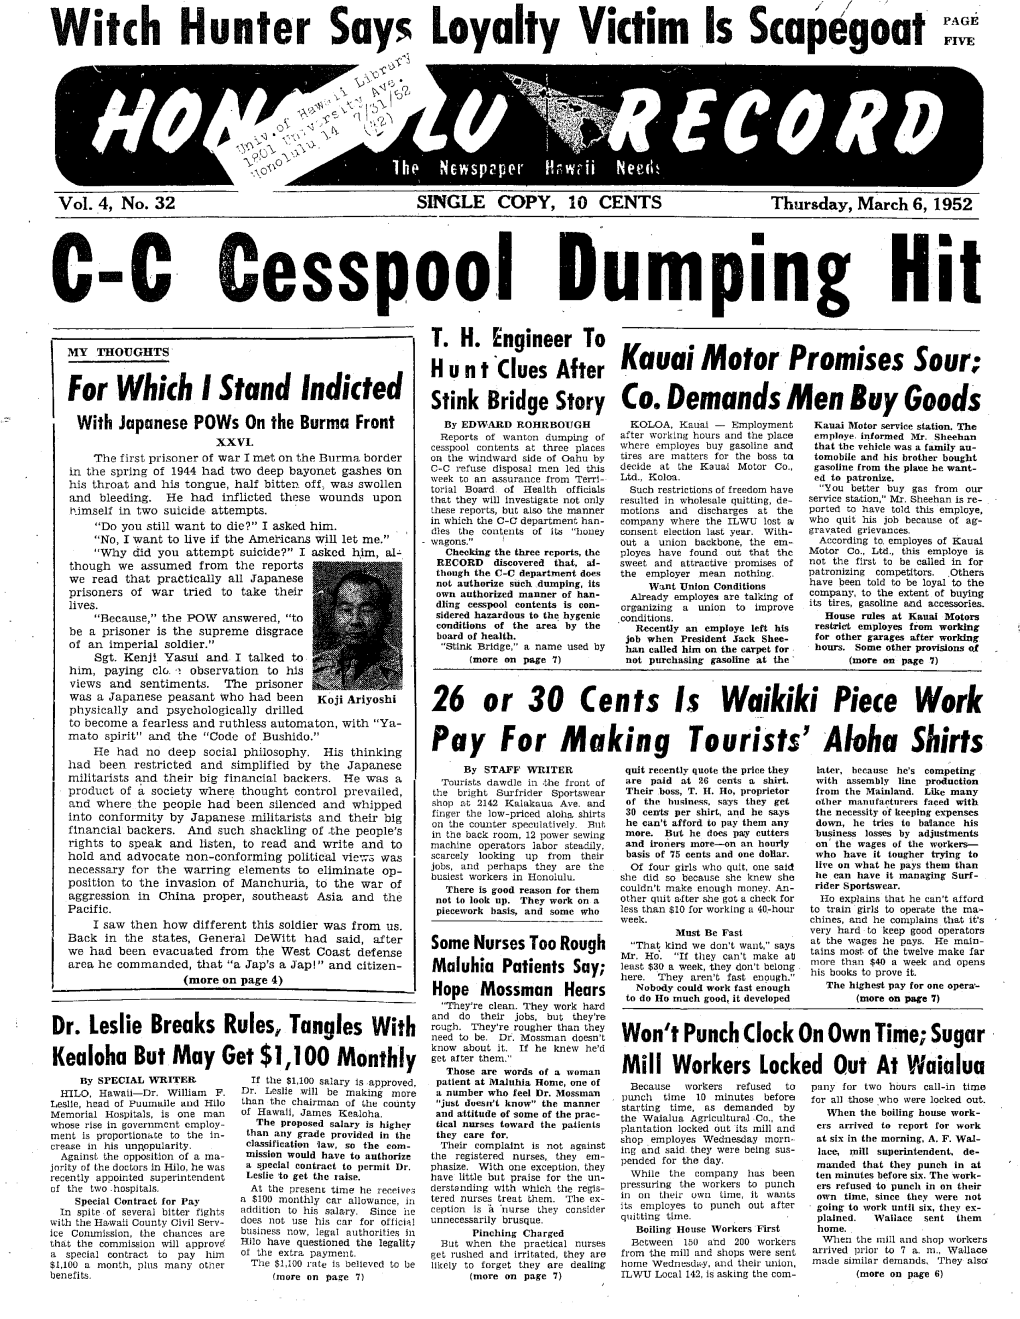 C-C Cesspool Dumping Hit T